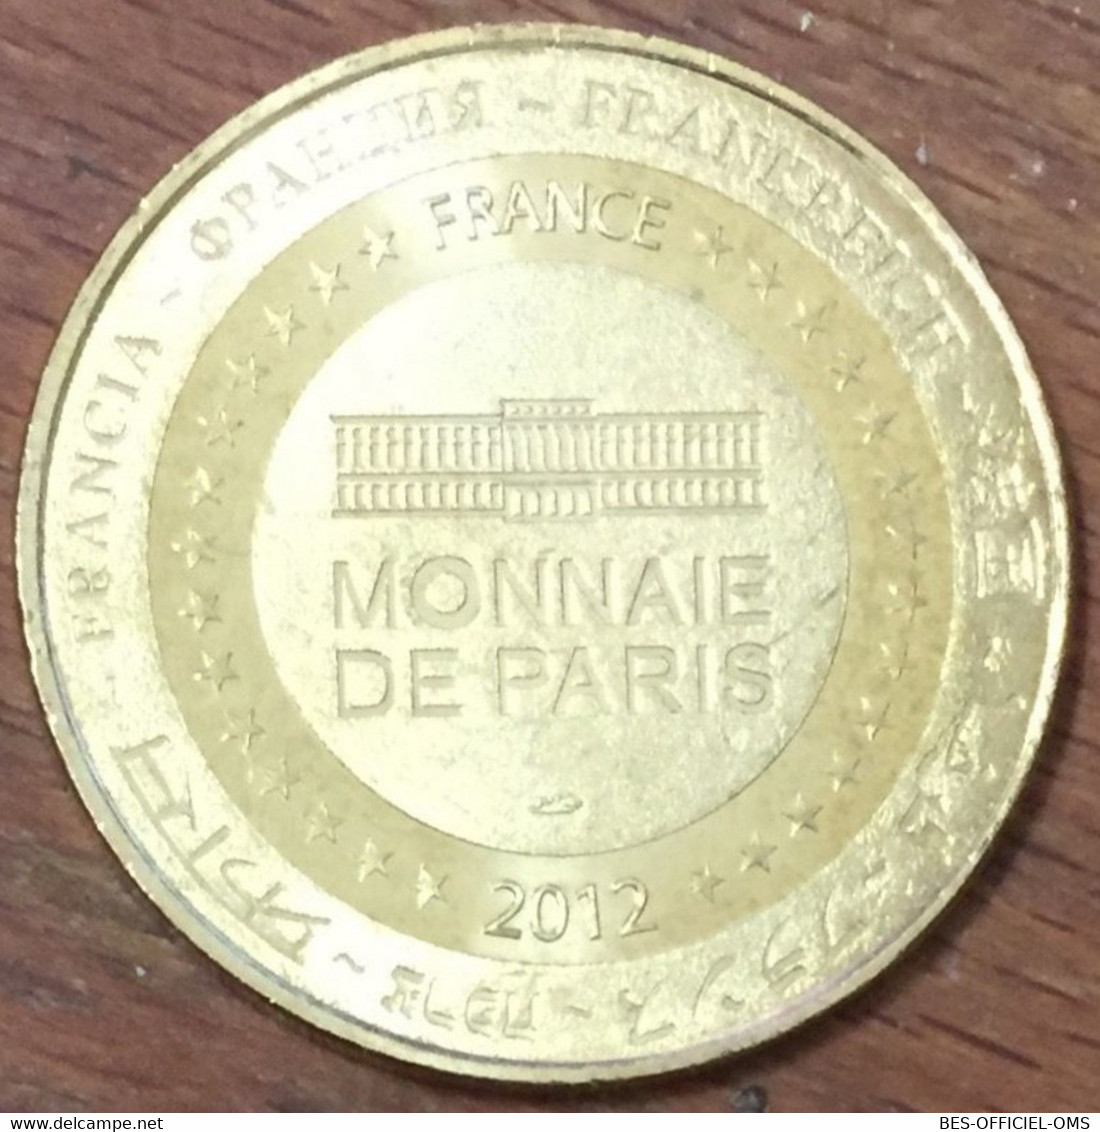 75015 PARIS TOUR EIFFEL ARC DE TRIOMPHE NOTRE DAME PONT NEUF MDP 2012 MÉDAILLE MONNAIE DE PARIS JETON MEDALS TOKENS COIN - 2012